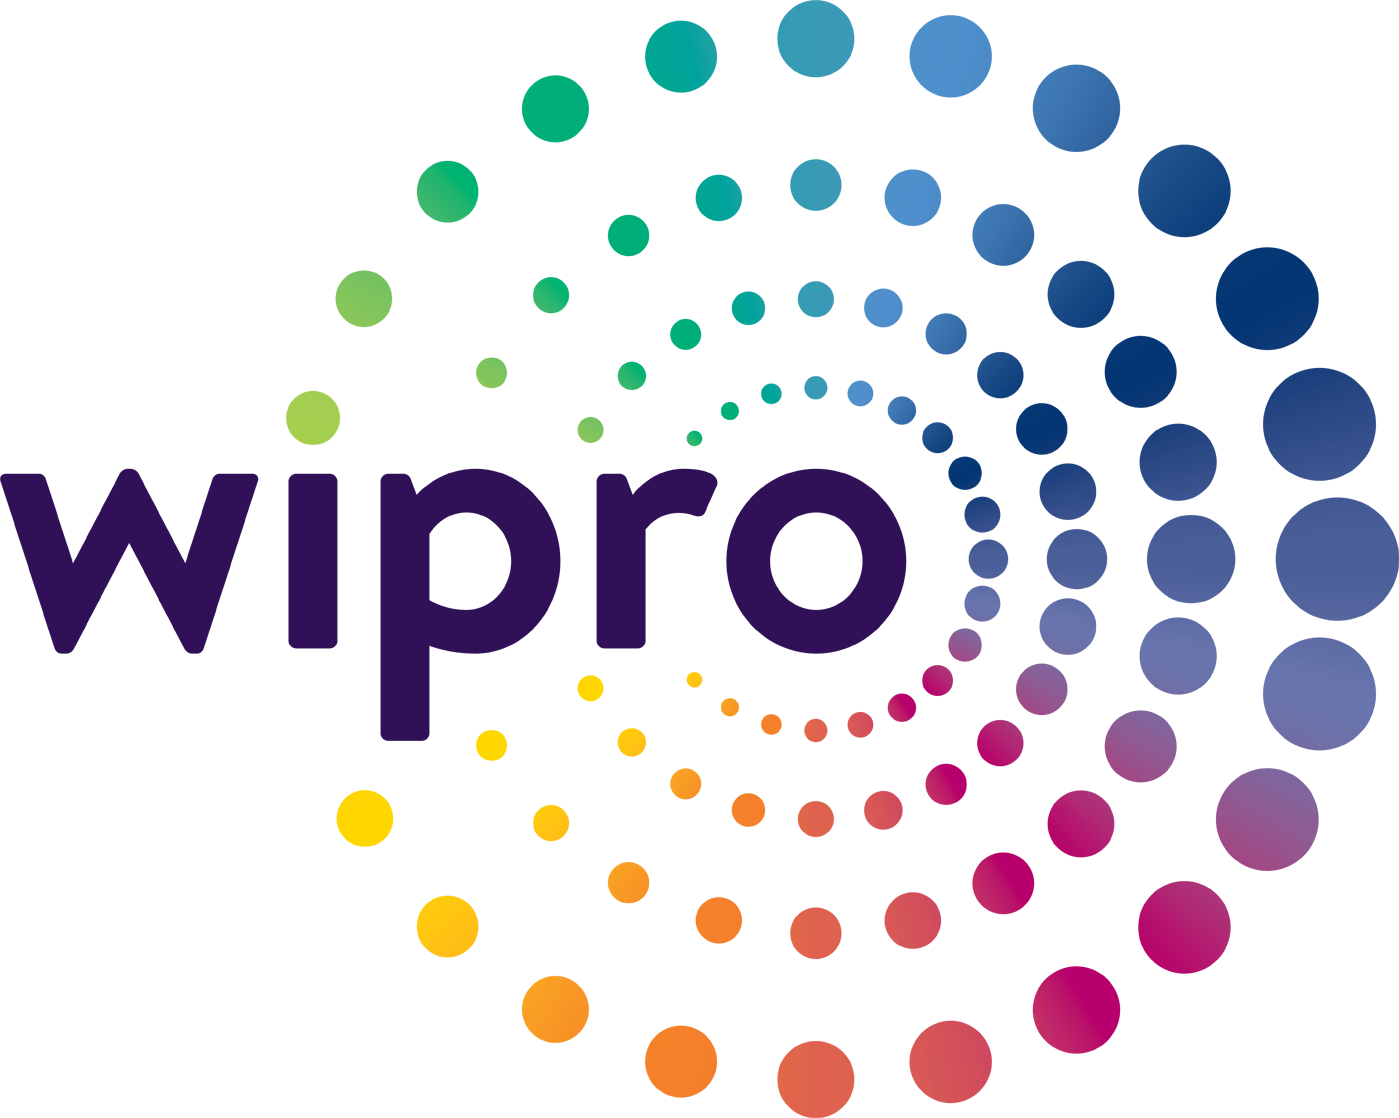 Logotipo de Wipro